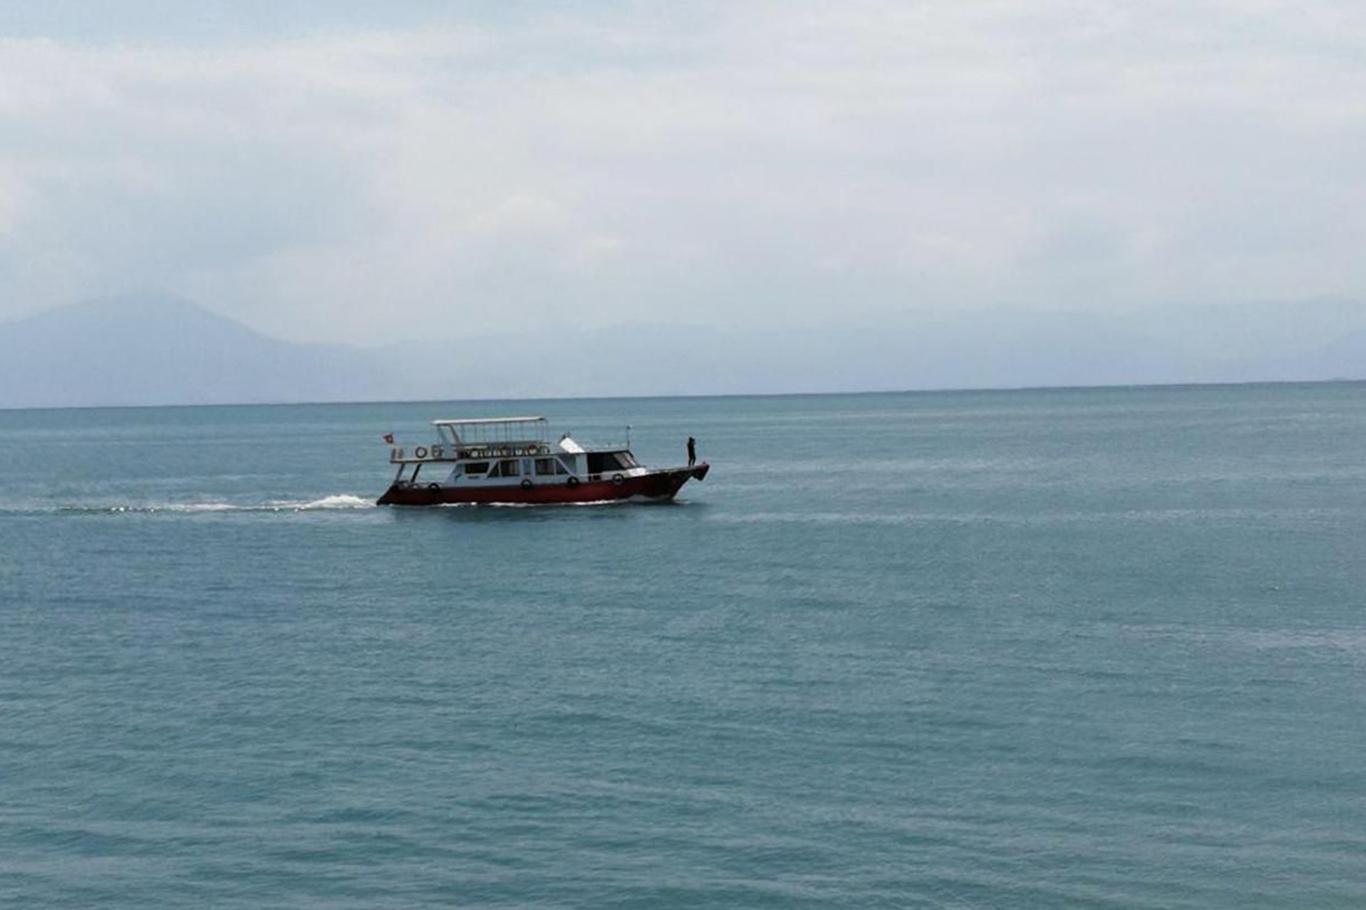 Van Gölü’nde batan göçmen teknesi bulundu